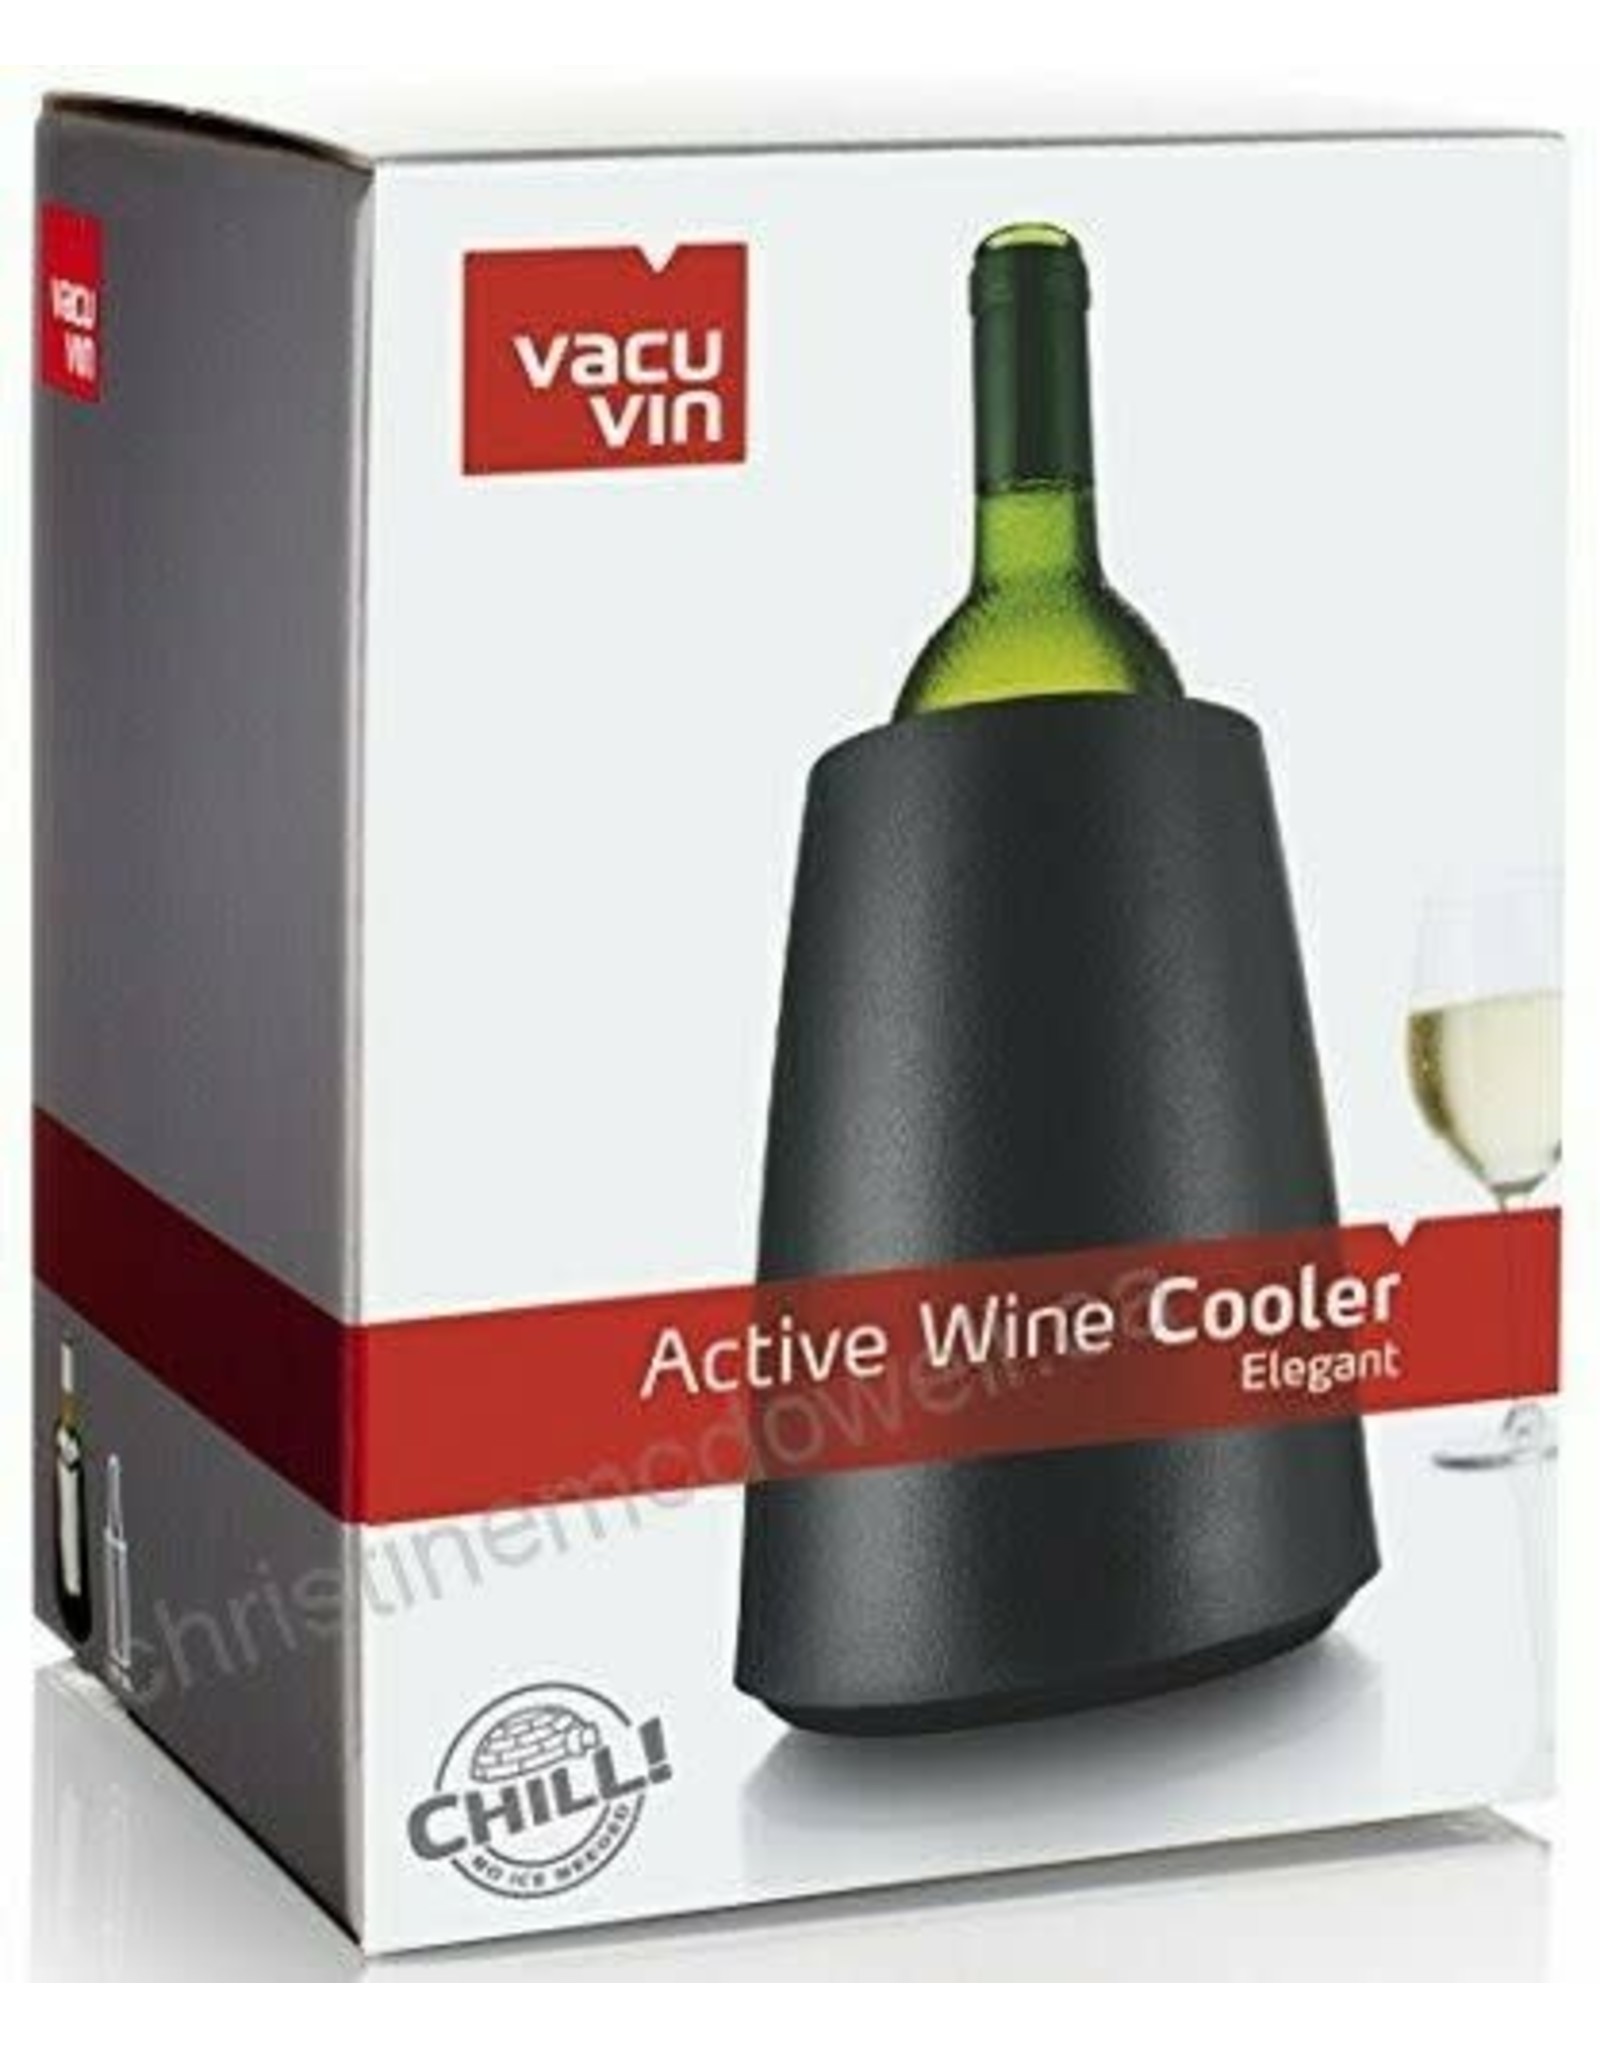 VACU VIN ACTIVE WINE COOLER